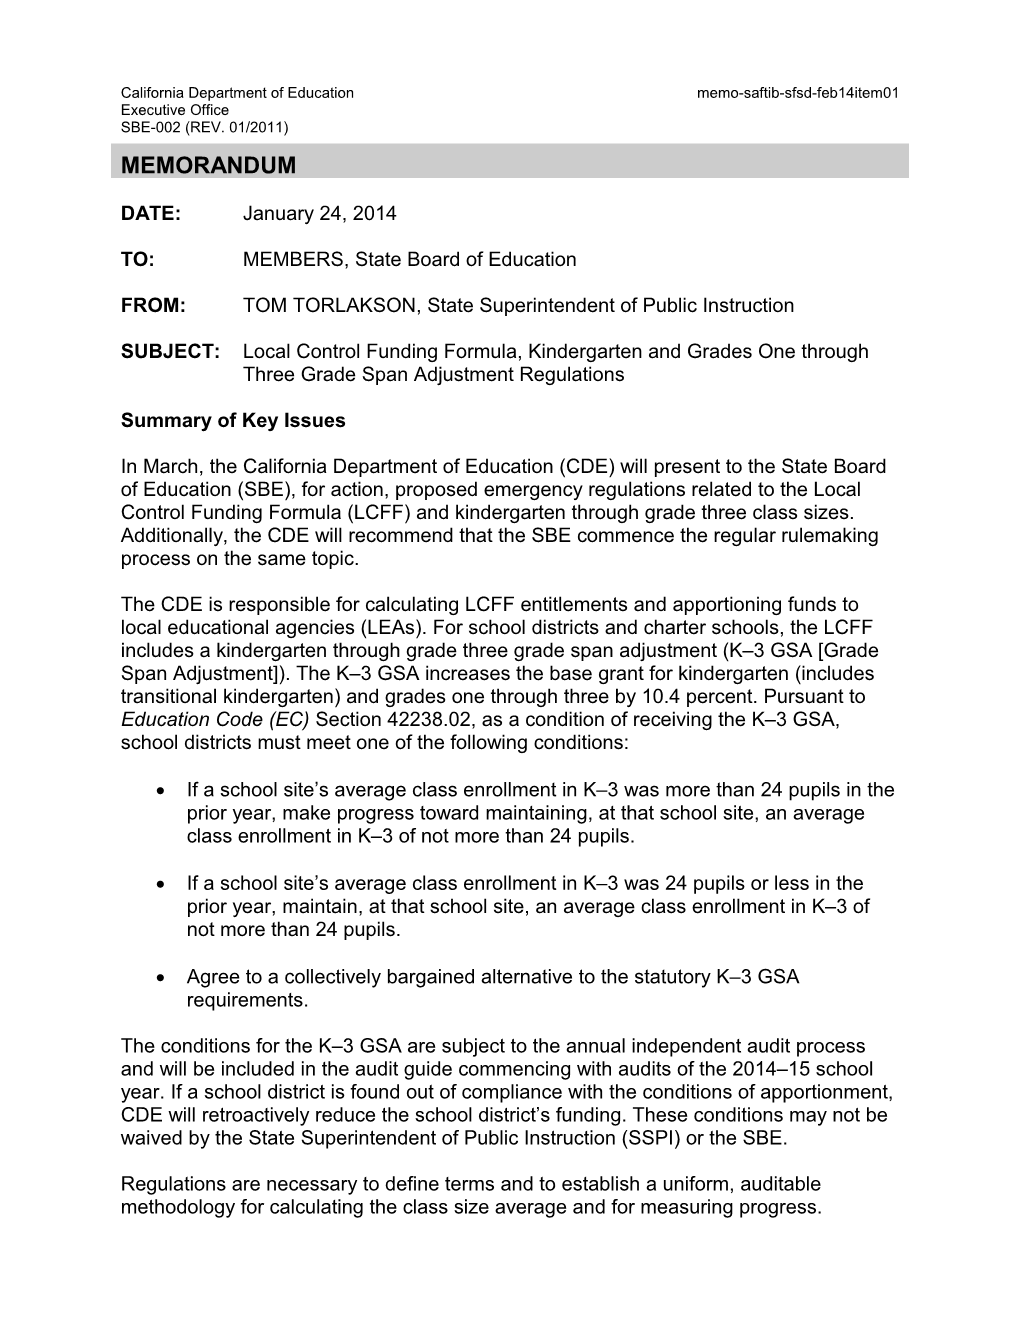 February 2014 SFSD Memo Item 01 - Information Memorandum (CA State Board of Education)